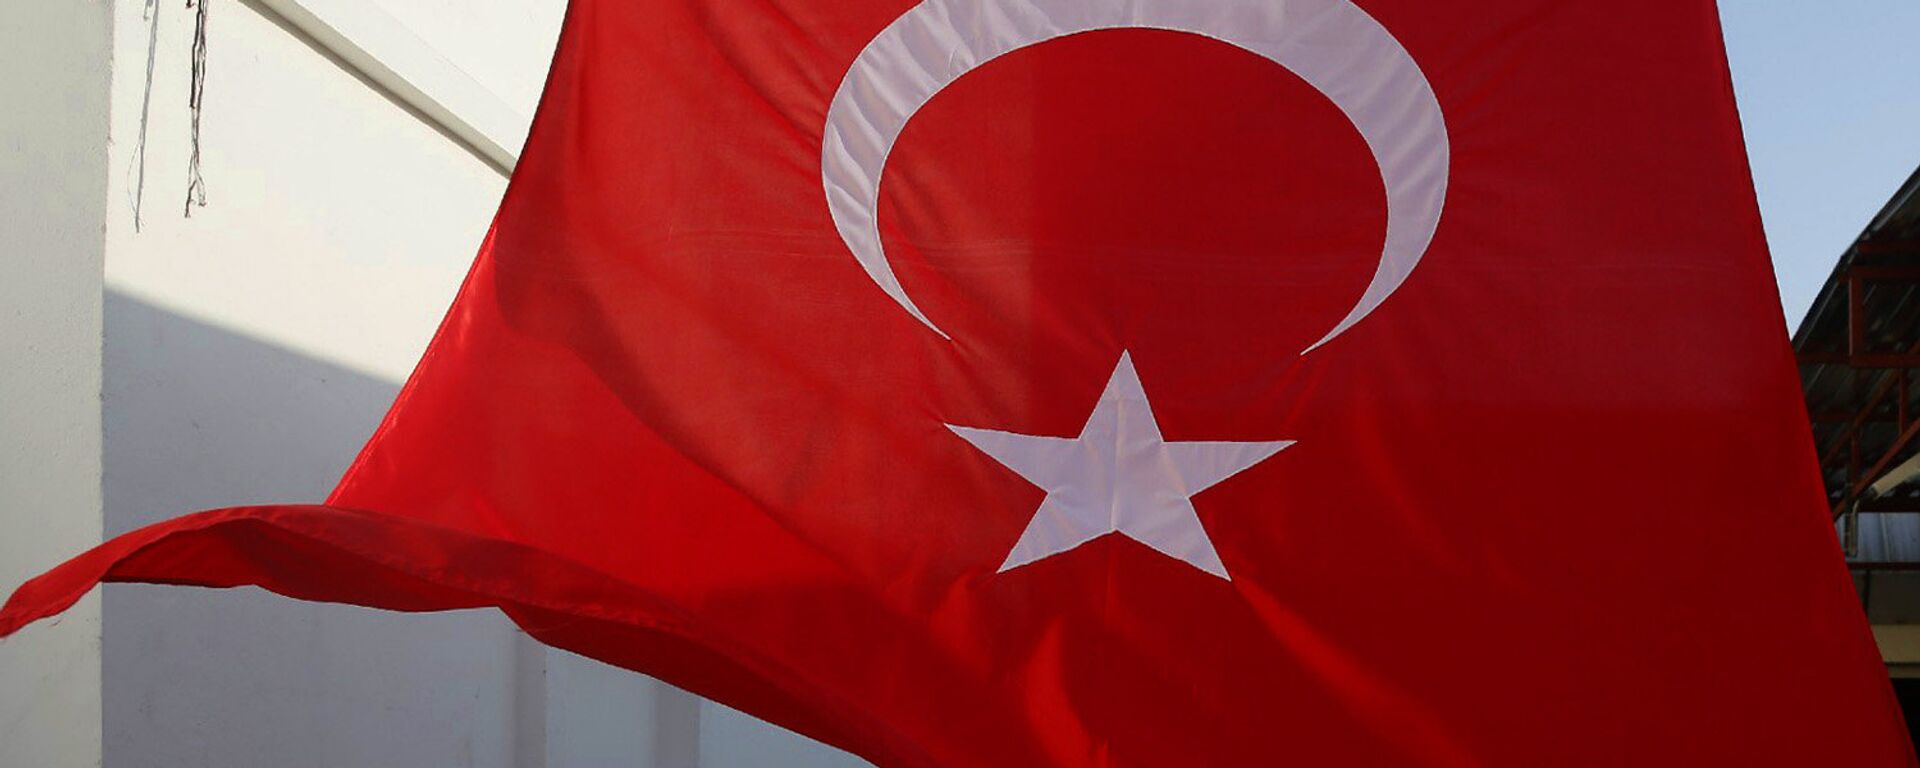 Турецкий флаг - Sputnik Узбекистан, 1920, 18.11.2020